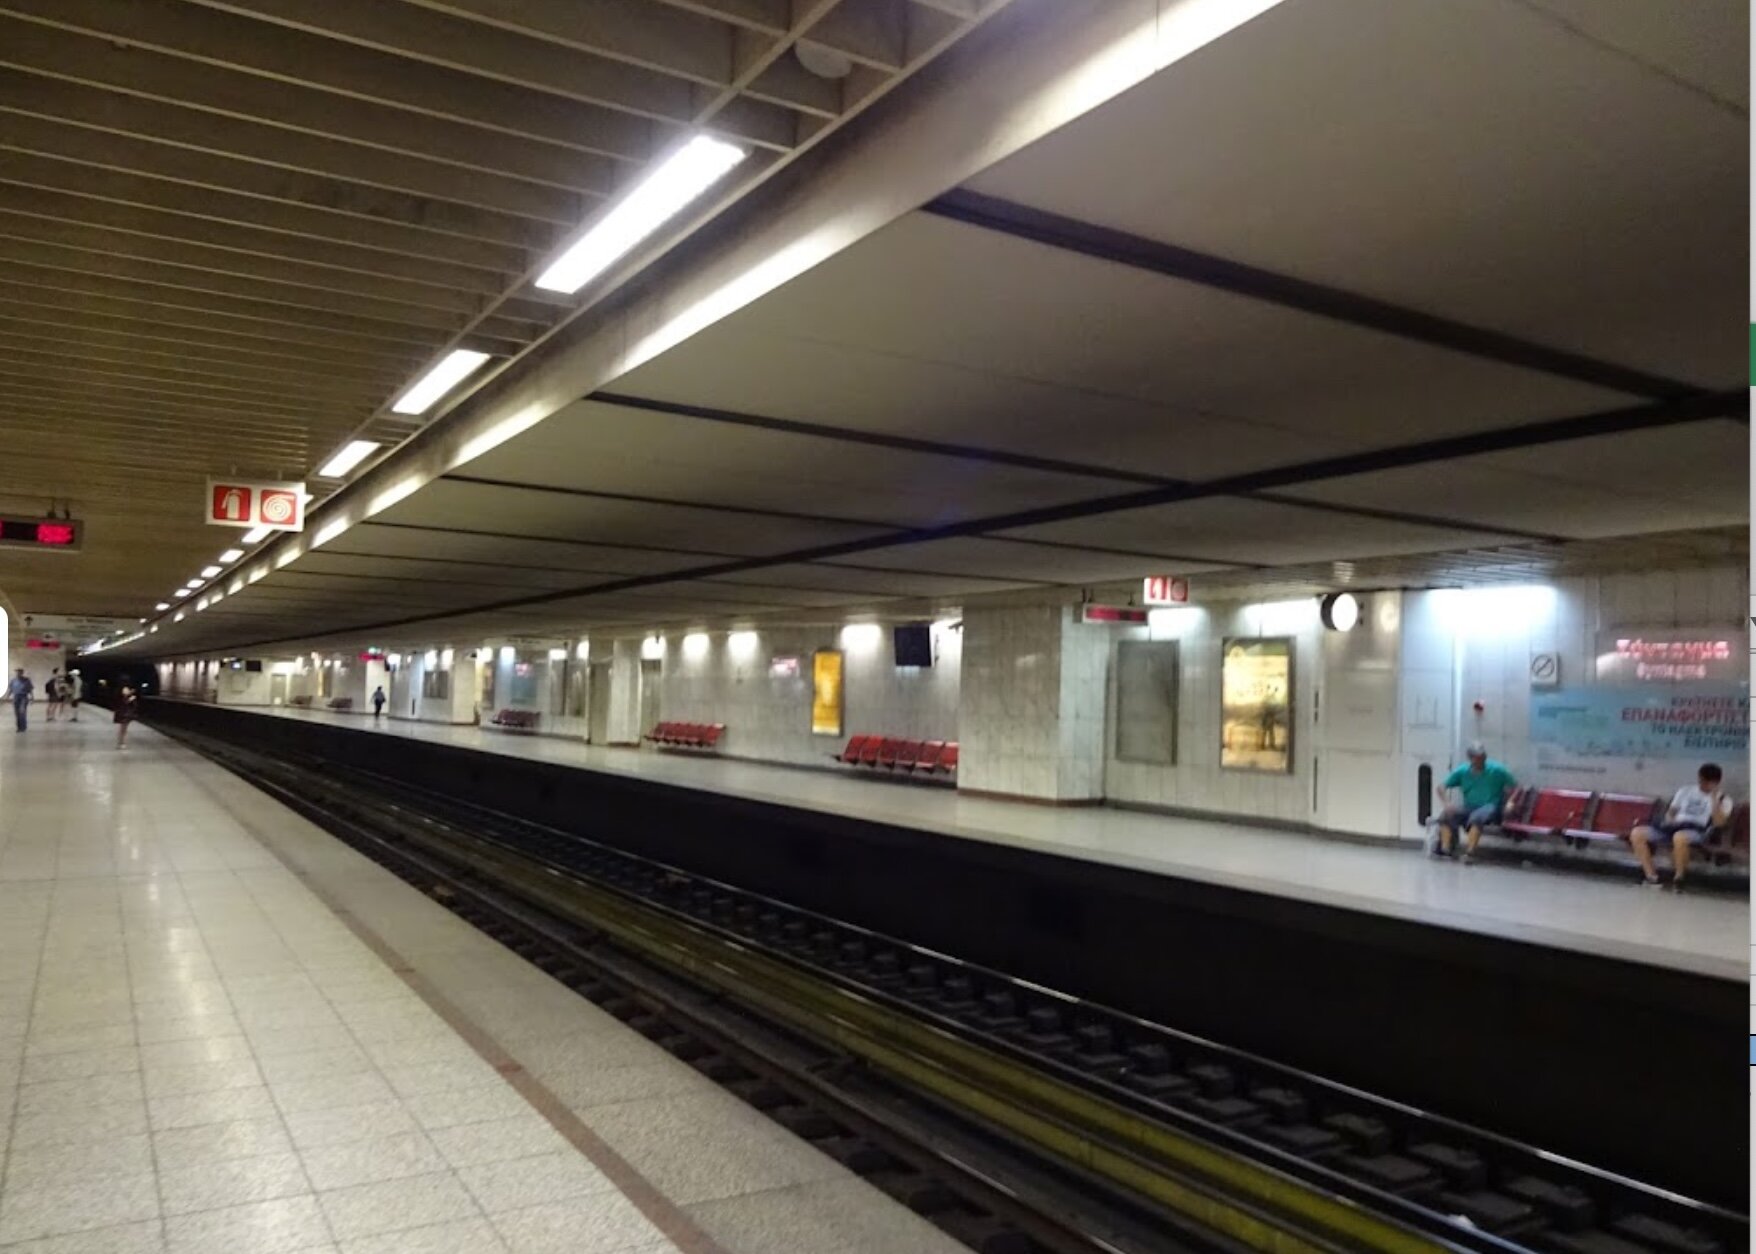 Δωρεάν WiFi αναμένεται να αποκτήσουν 3 σταθμοί του Μετρό